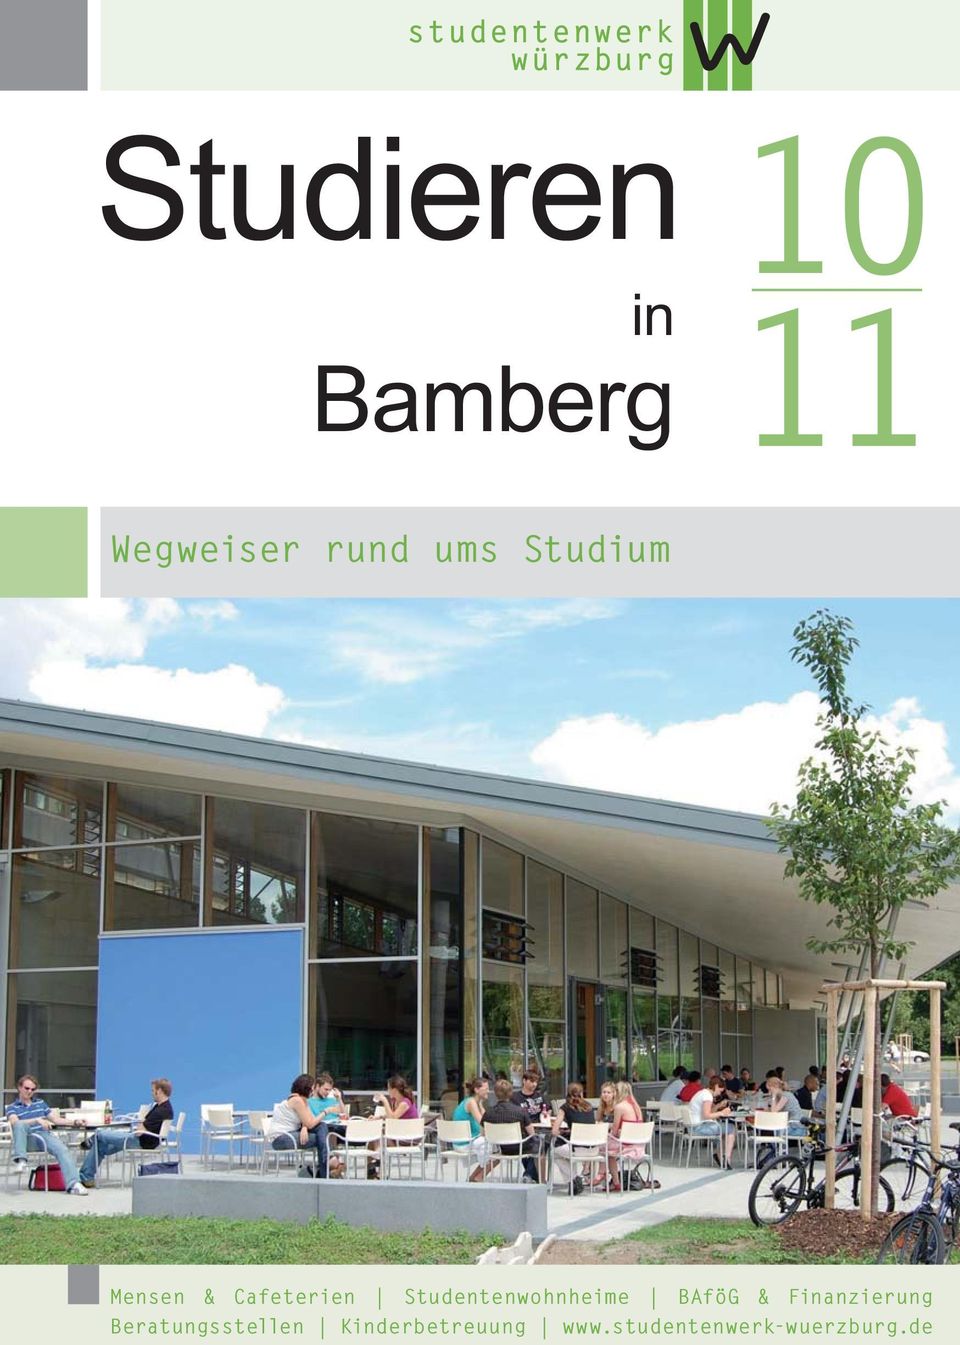 Studentenwohnheime BAföG & Finanzierung